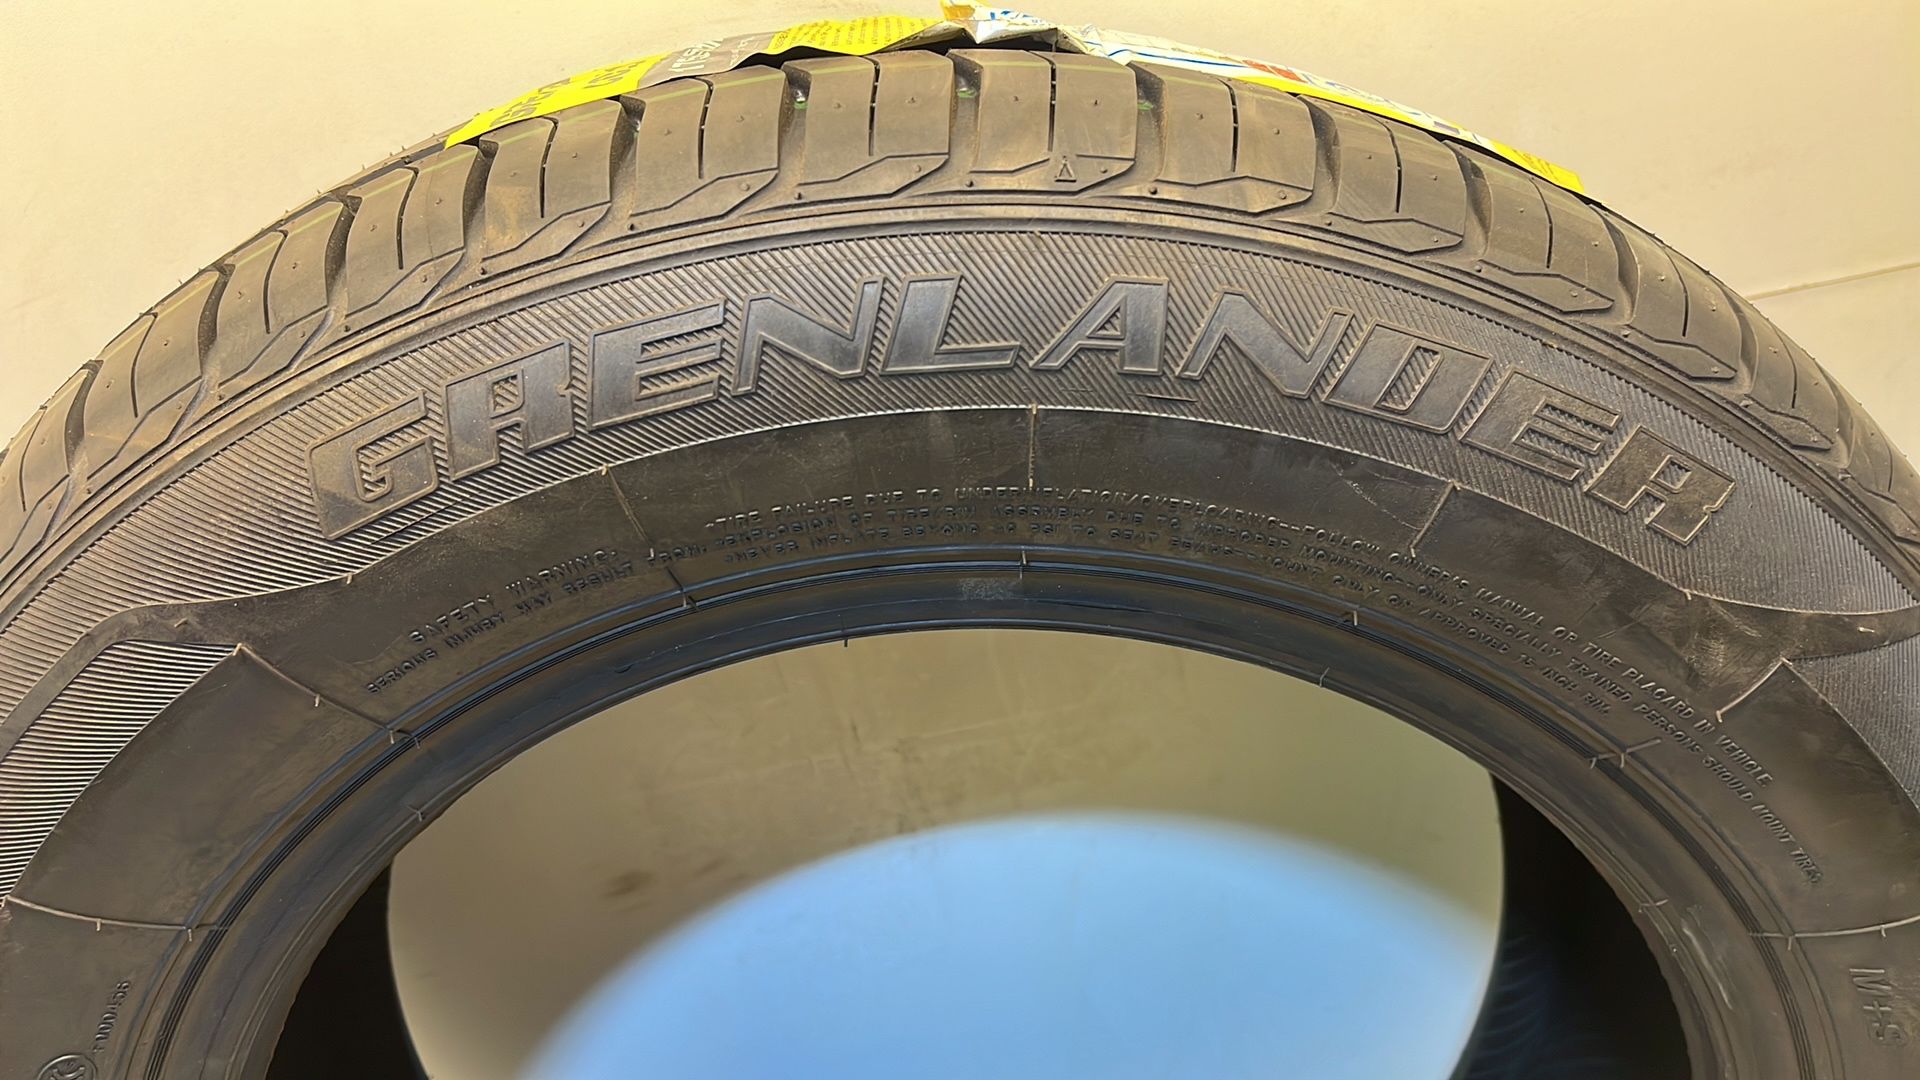 Crenlander | Golo H01 | 175/65R13 Tyre - Image 4 of 6